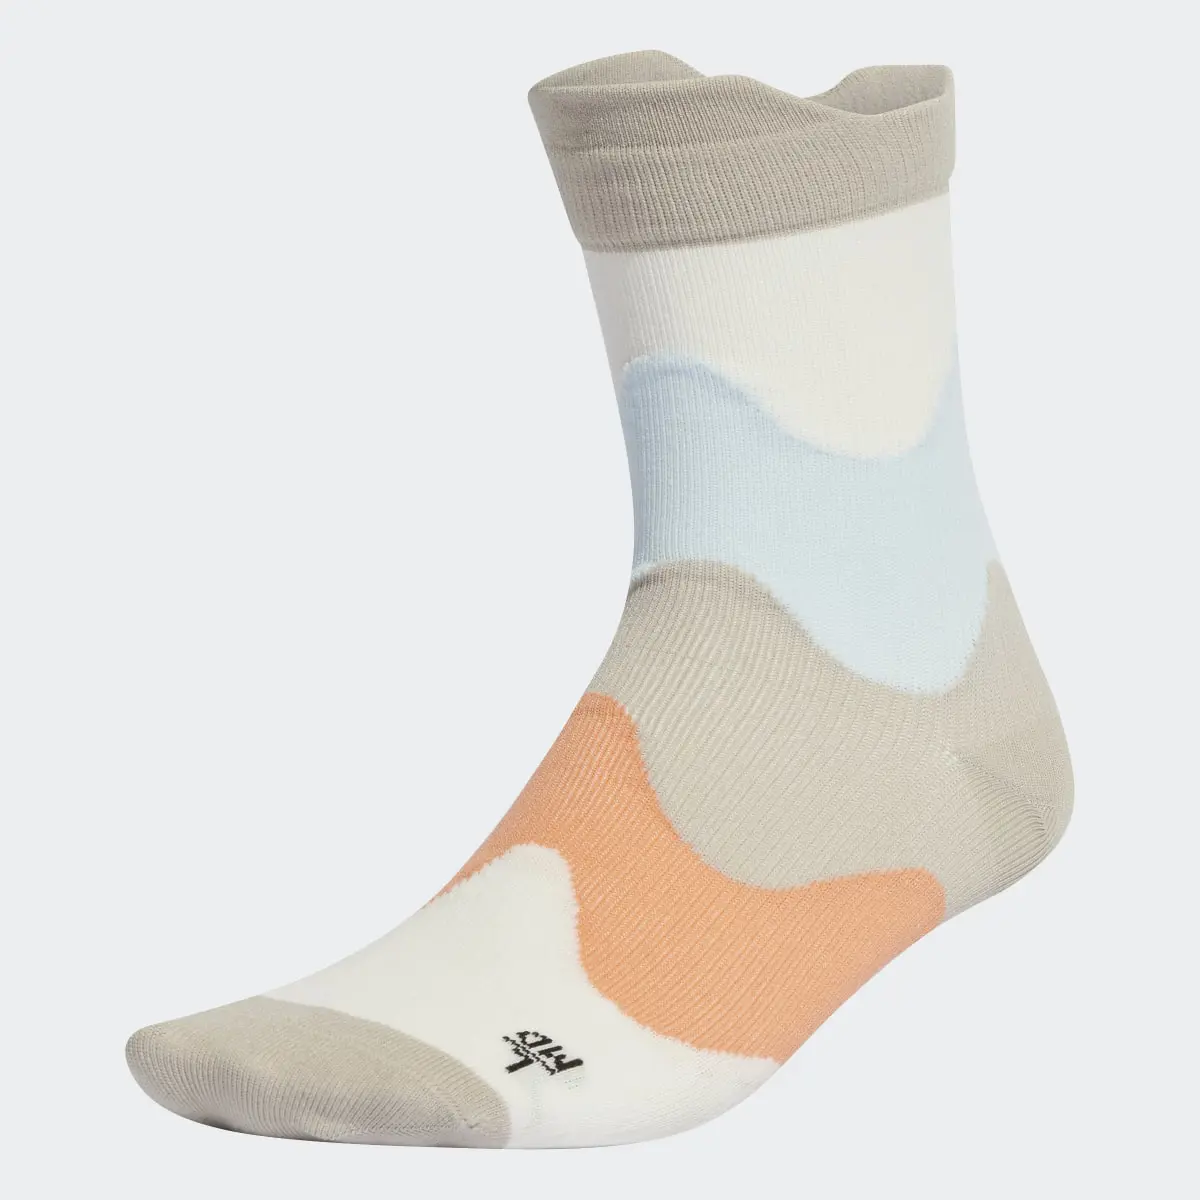 Adidas x Marimekko Training Socks. 1